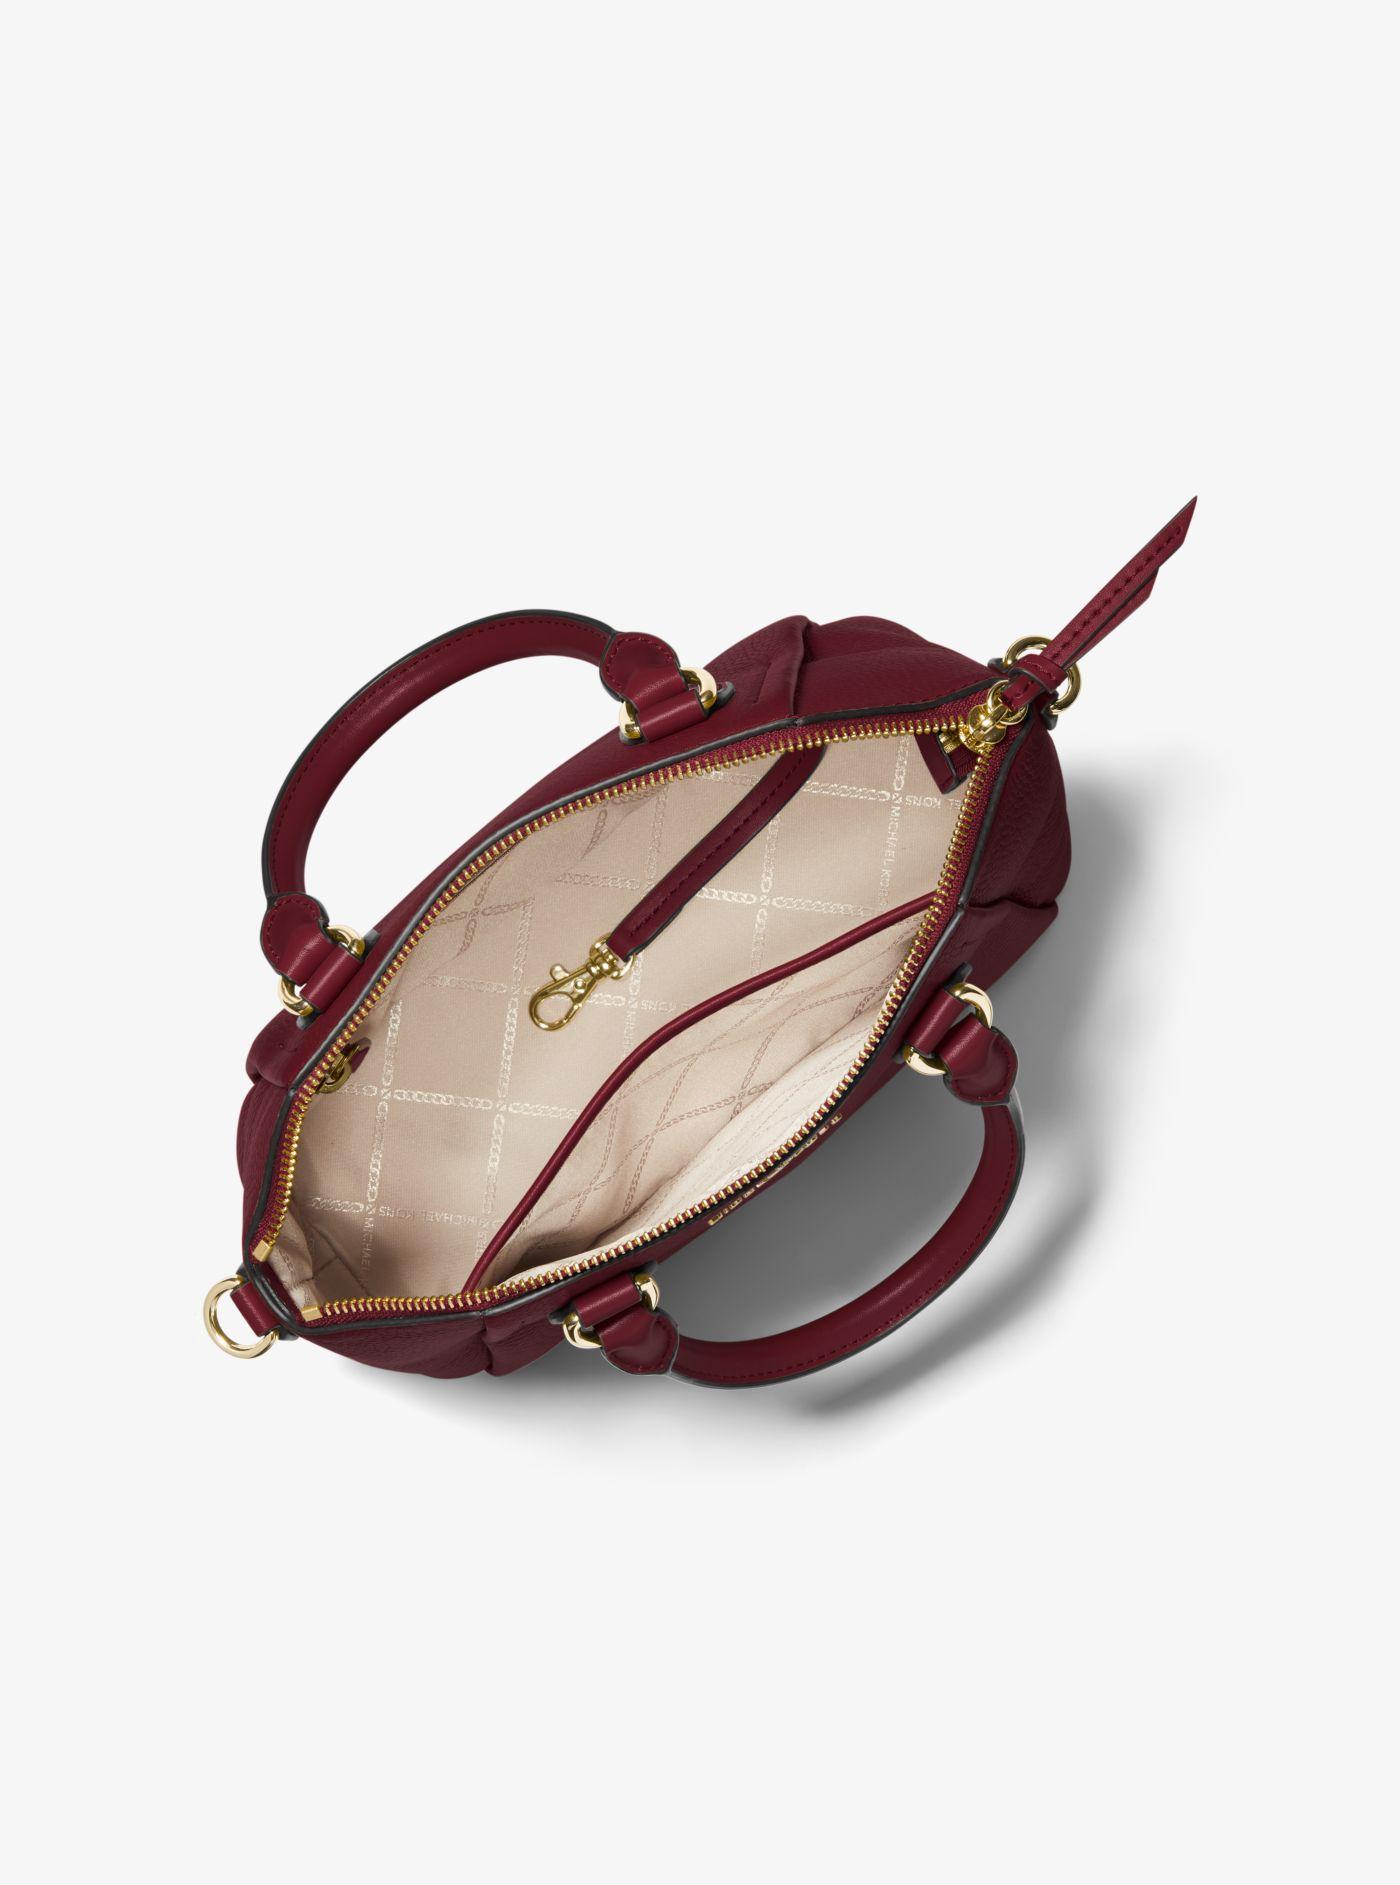 Michael Kors Sienna Medium Pebbled Leather Satchel | Lyst